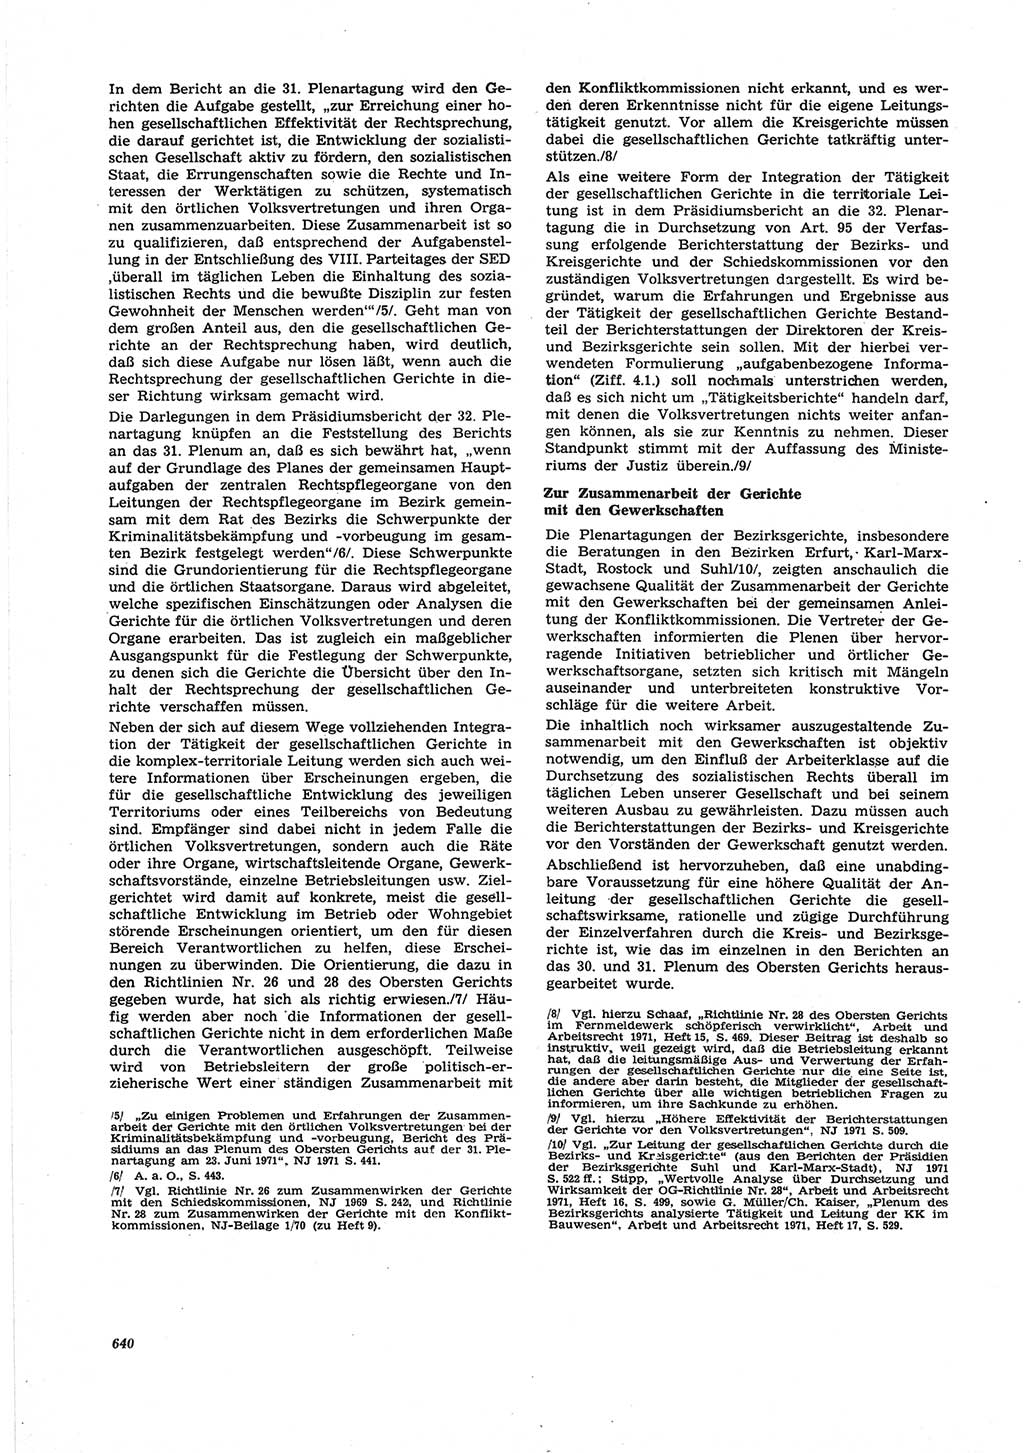 Neue Justiz (NJ), Zeitschrift für Recht und Rechtswissenschaft [Deutsche Demokratische Republik (DDR)], 25. Jahrgang 1971, Seite 640 (NJ DDR 1971, S. 640)